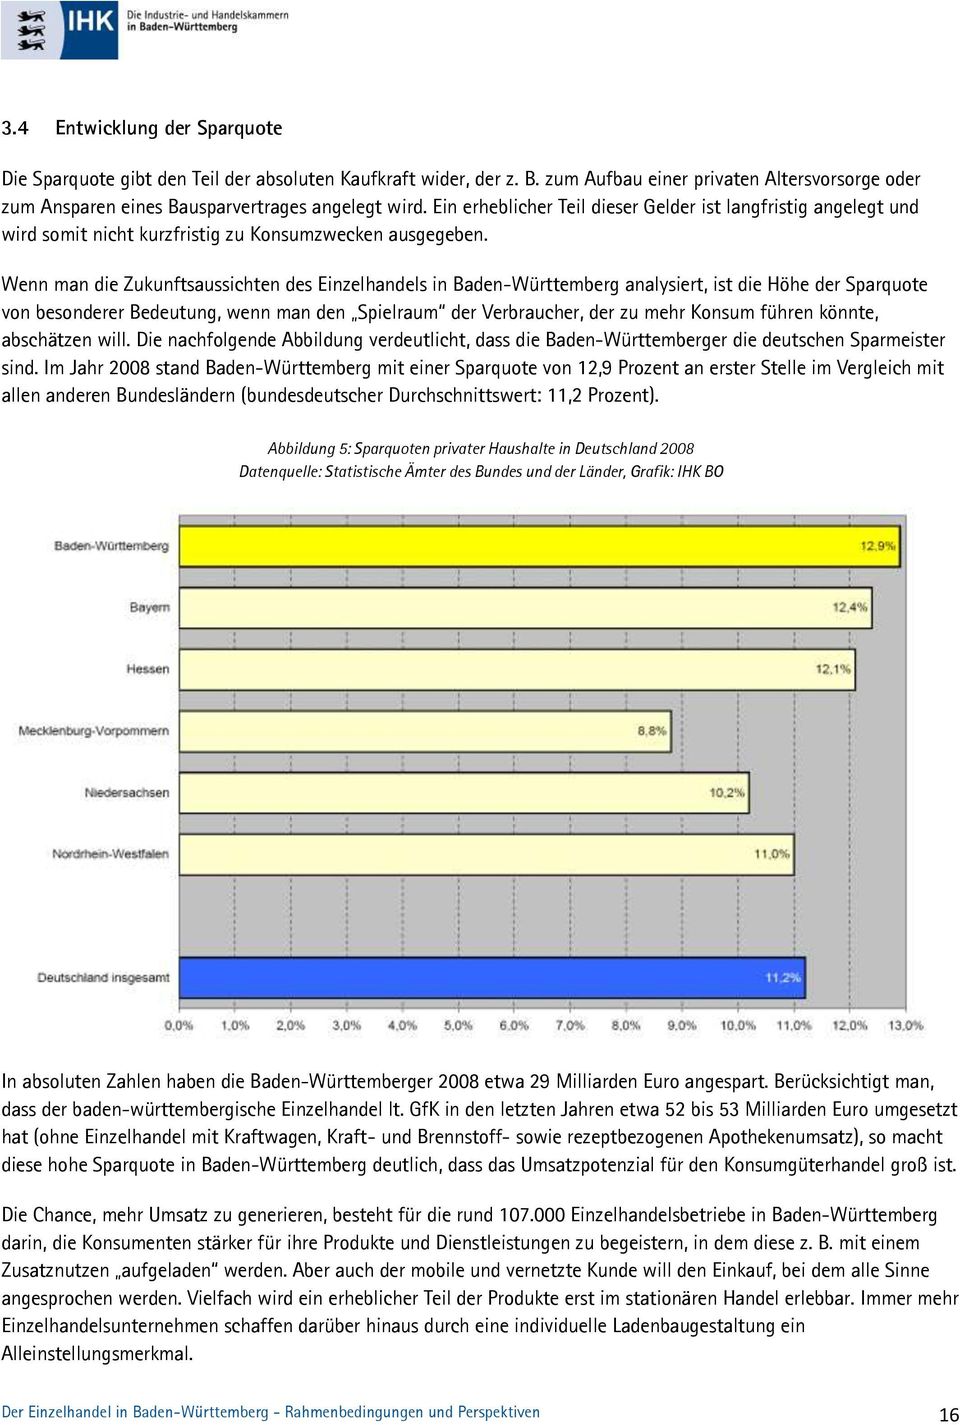 Wenn man die Zukunftsaussichten des Einzelhandels in Baden-Württemberg analysiert, ist die Höhe der Sparquote von besonderer Bedeutung, wenn man den Spielraum der Verbraucher, der zu mehr Konsum